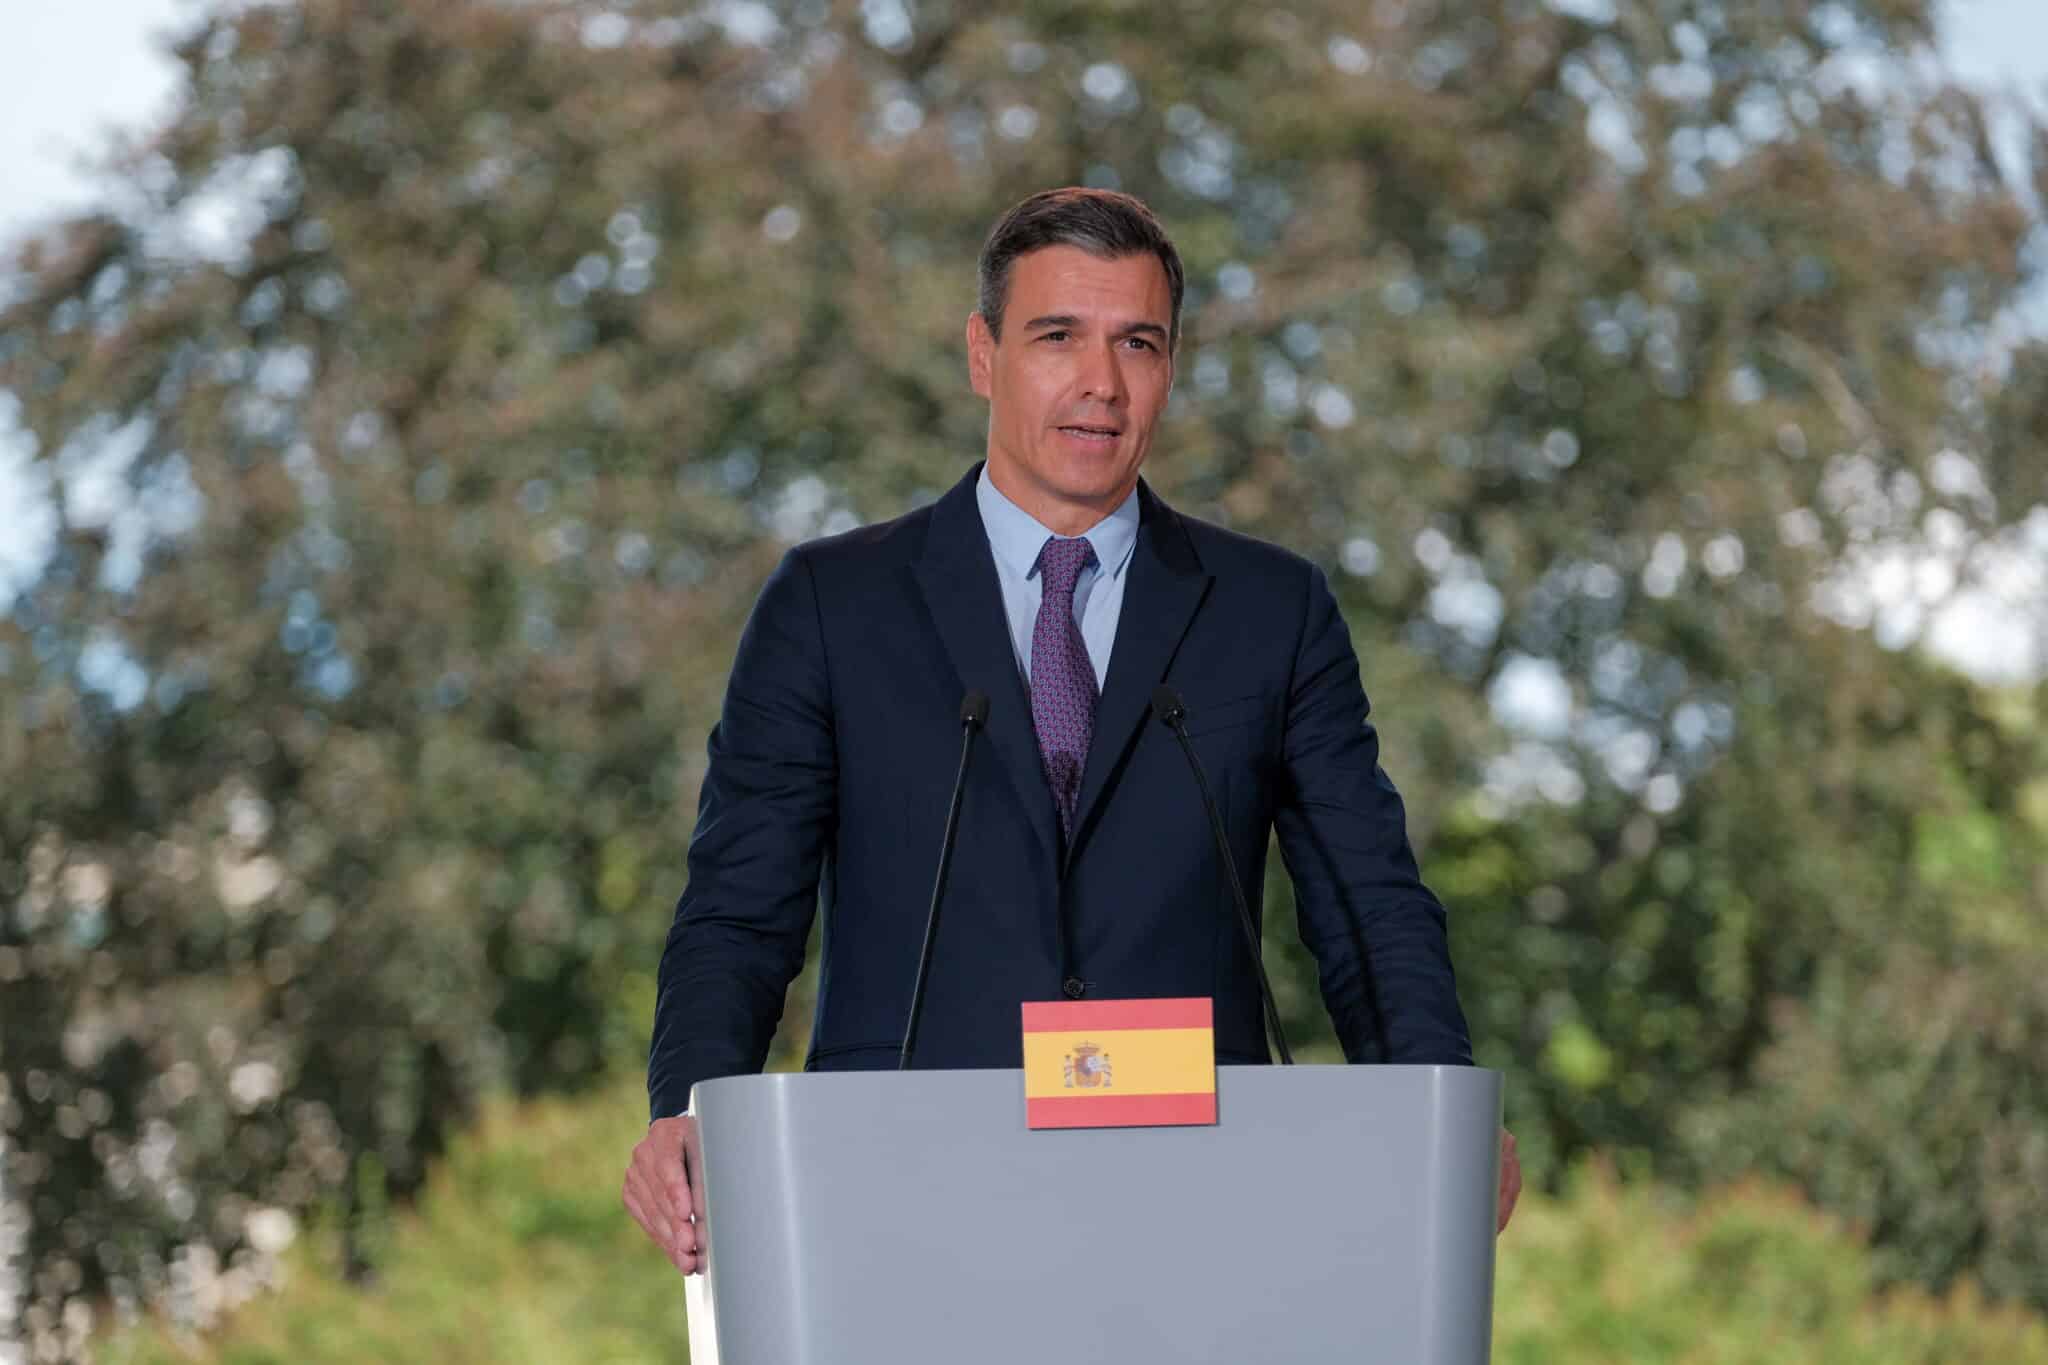 El Primer Ministro español, Pedro Sánchez, habla durante una conferencia de prensa conjunta con el Primer Ministro polaco en el Palacio de la Isla en el Parque Real Lazienki en Varsovia, Polonia, el 27 de julio de 2022.